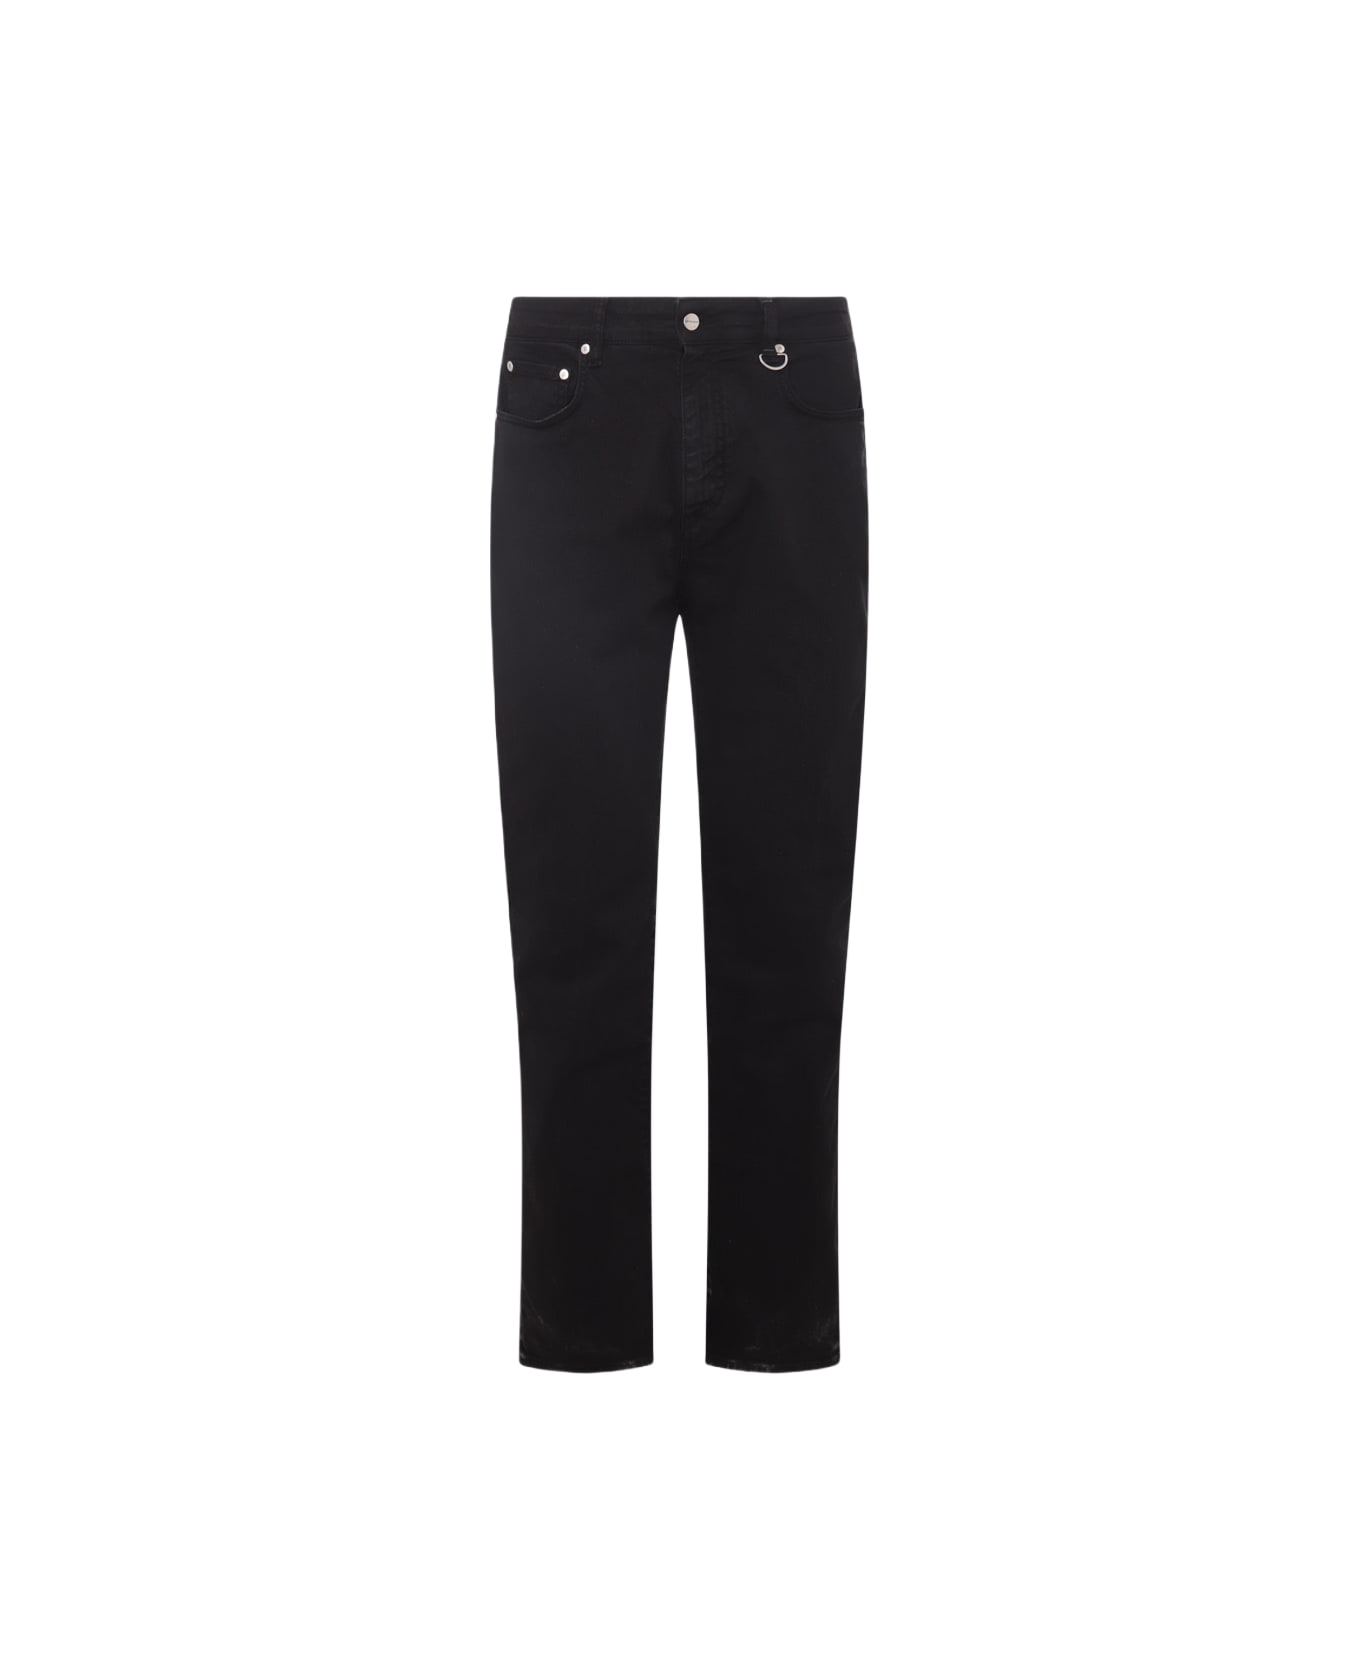 REPRESENT Black Cotton Blend Jeans - Black